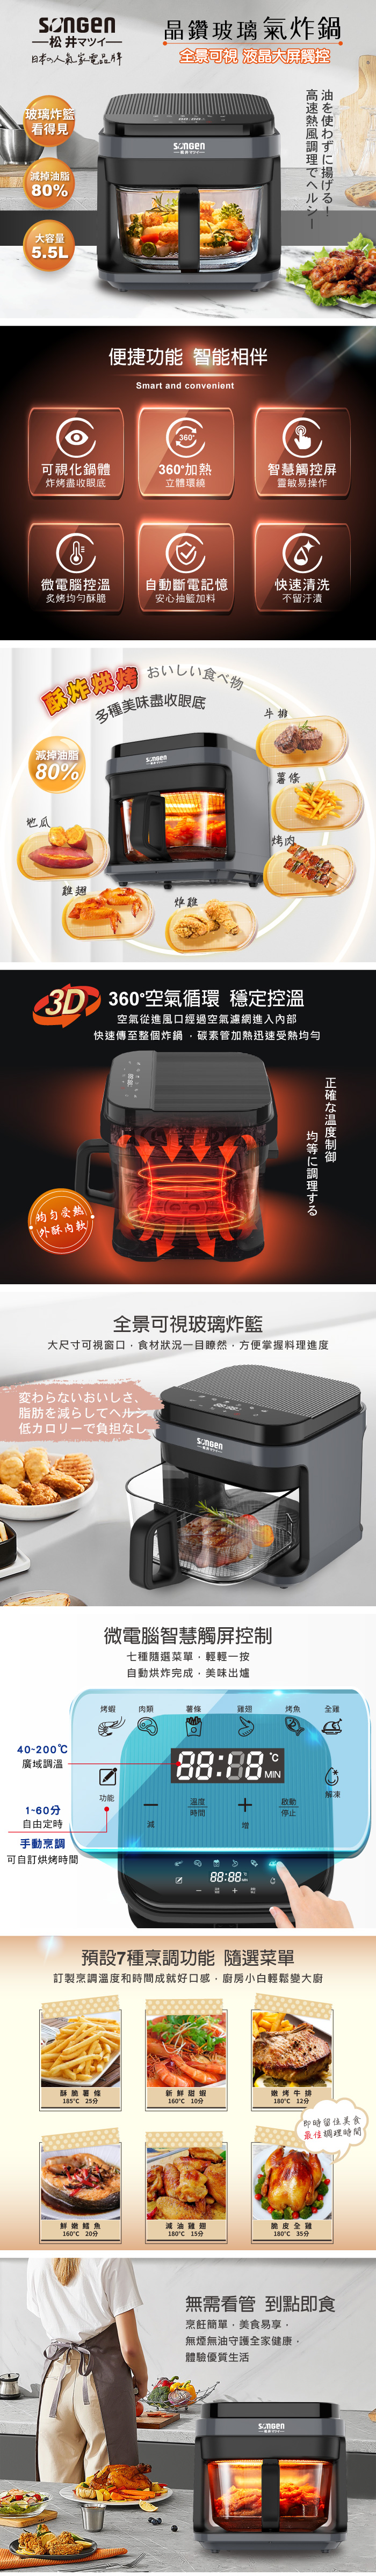 【松井】美廚3D熱旋5.5L晶鑽玻璃氣炸鍋/氣炸烤箱(SG-421GAF-B)